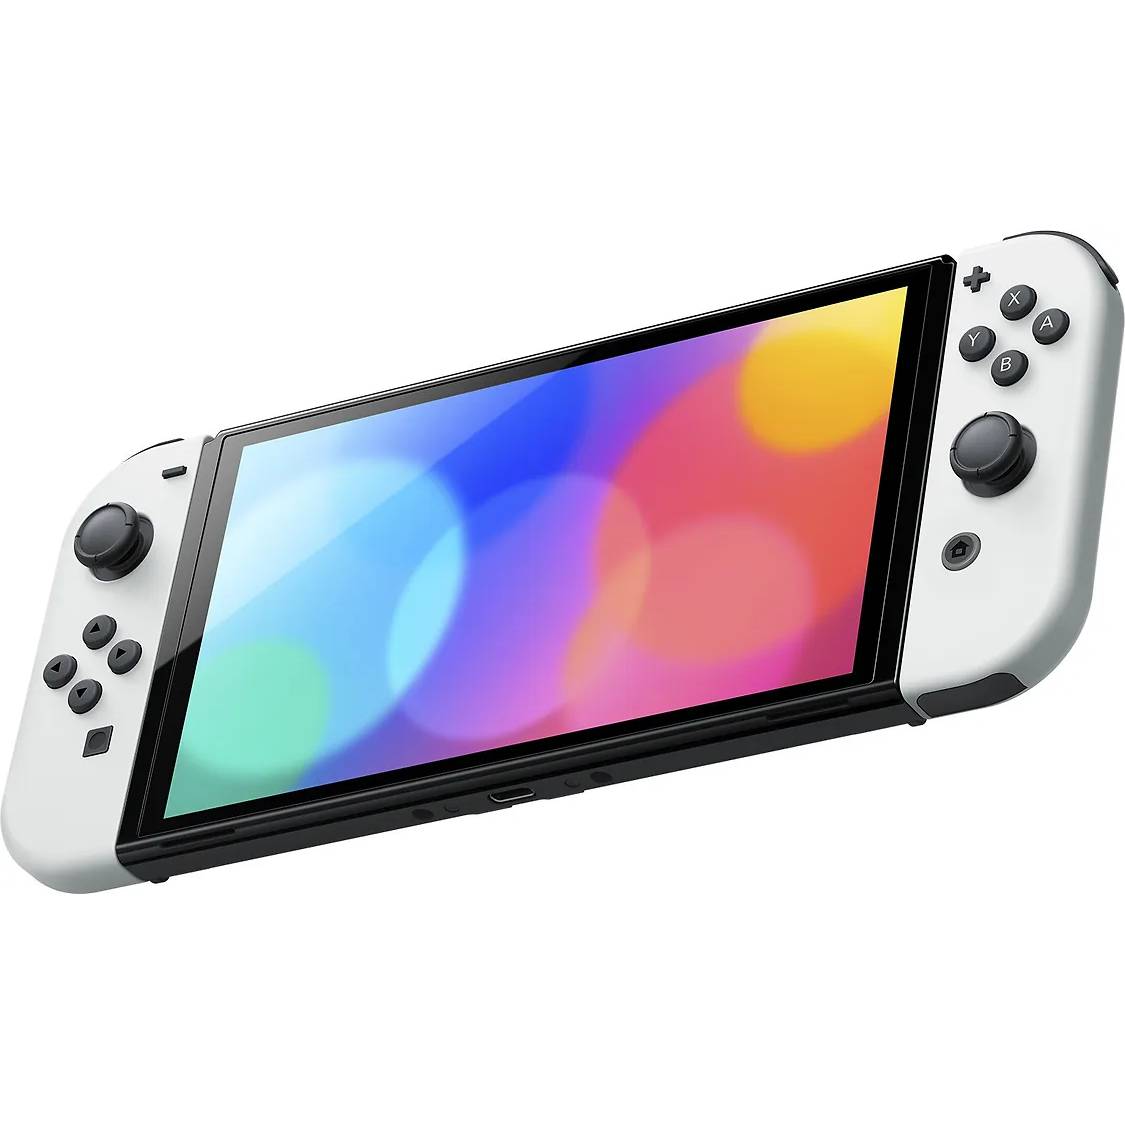 Фото — Игровая приставка Nintendo Switch OLED, белый